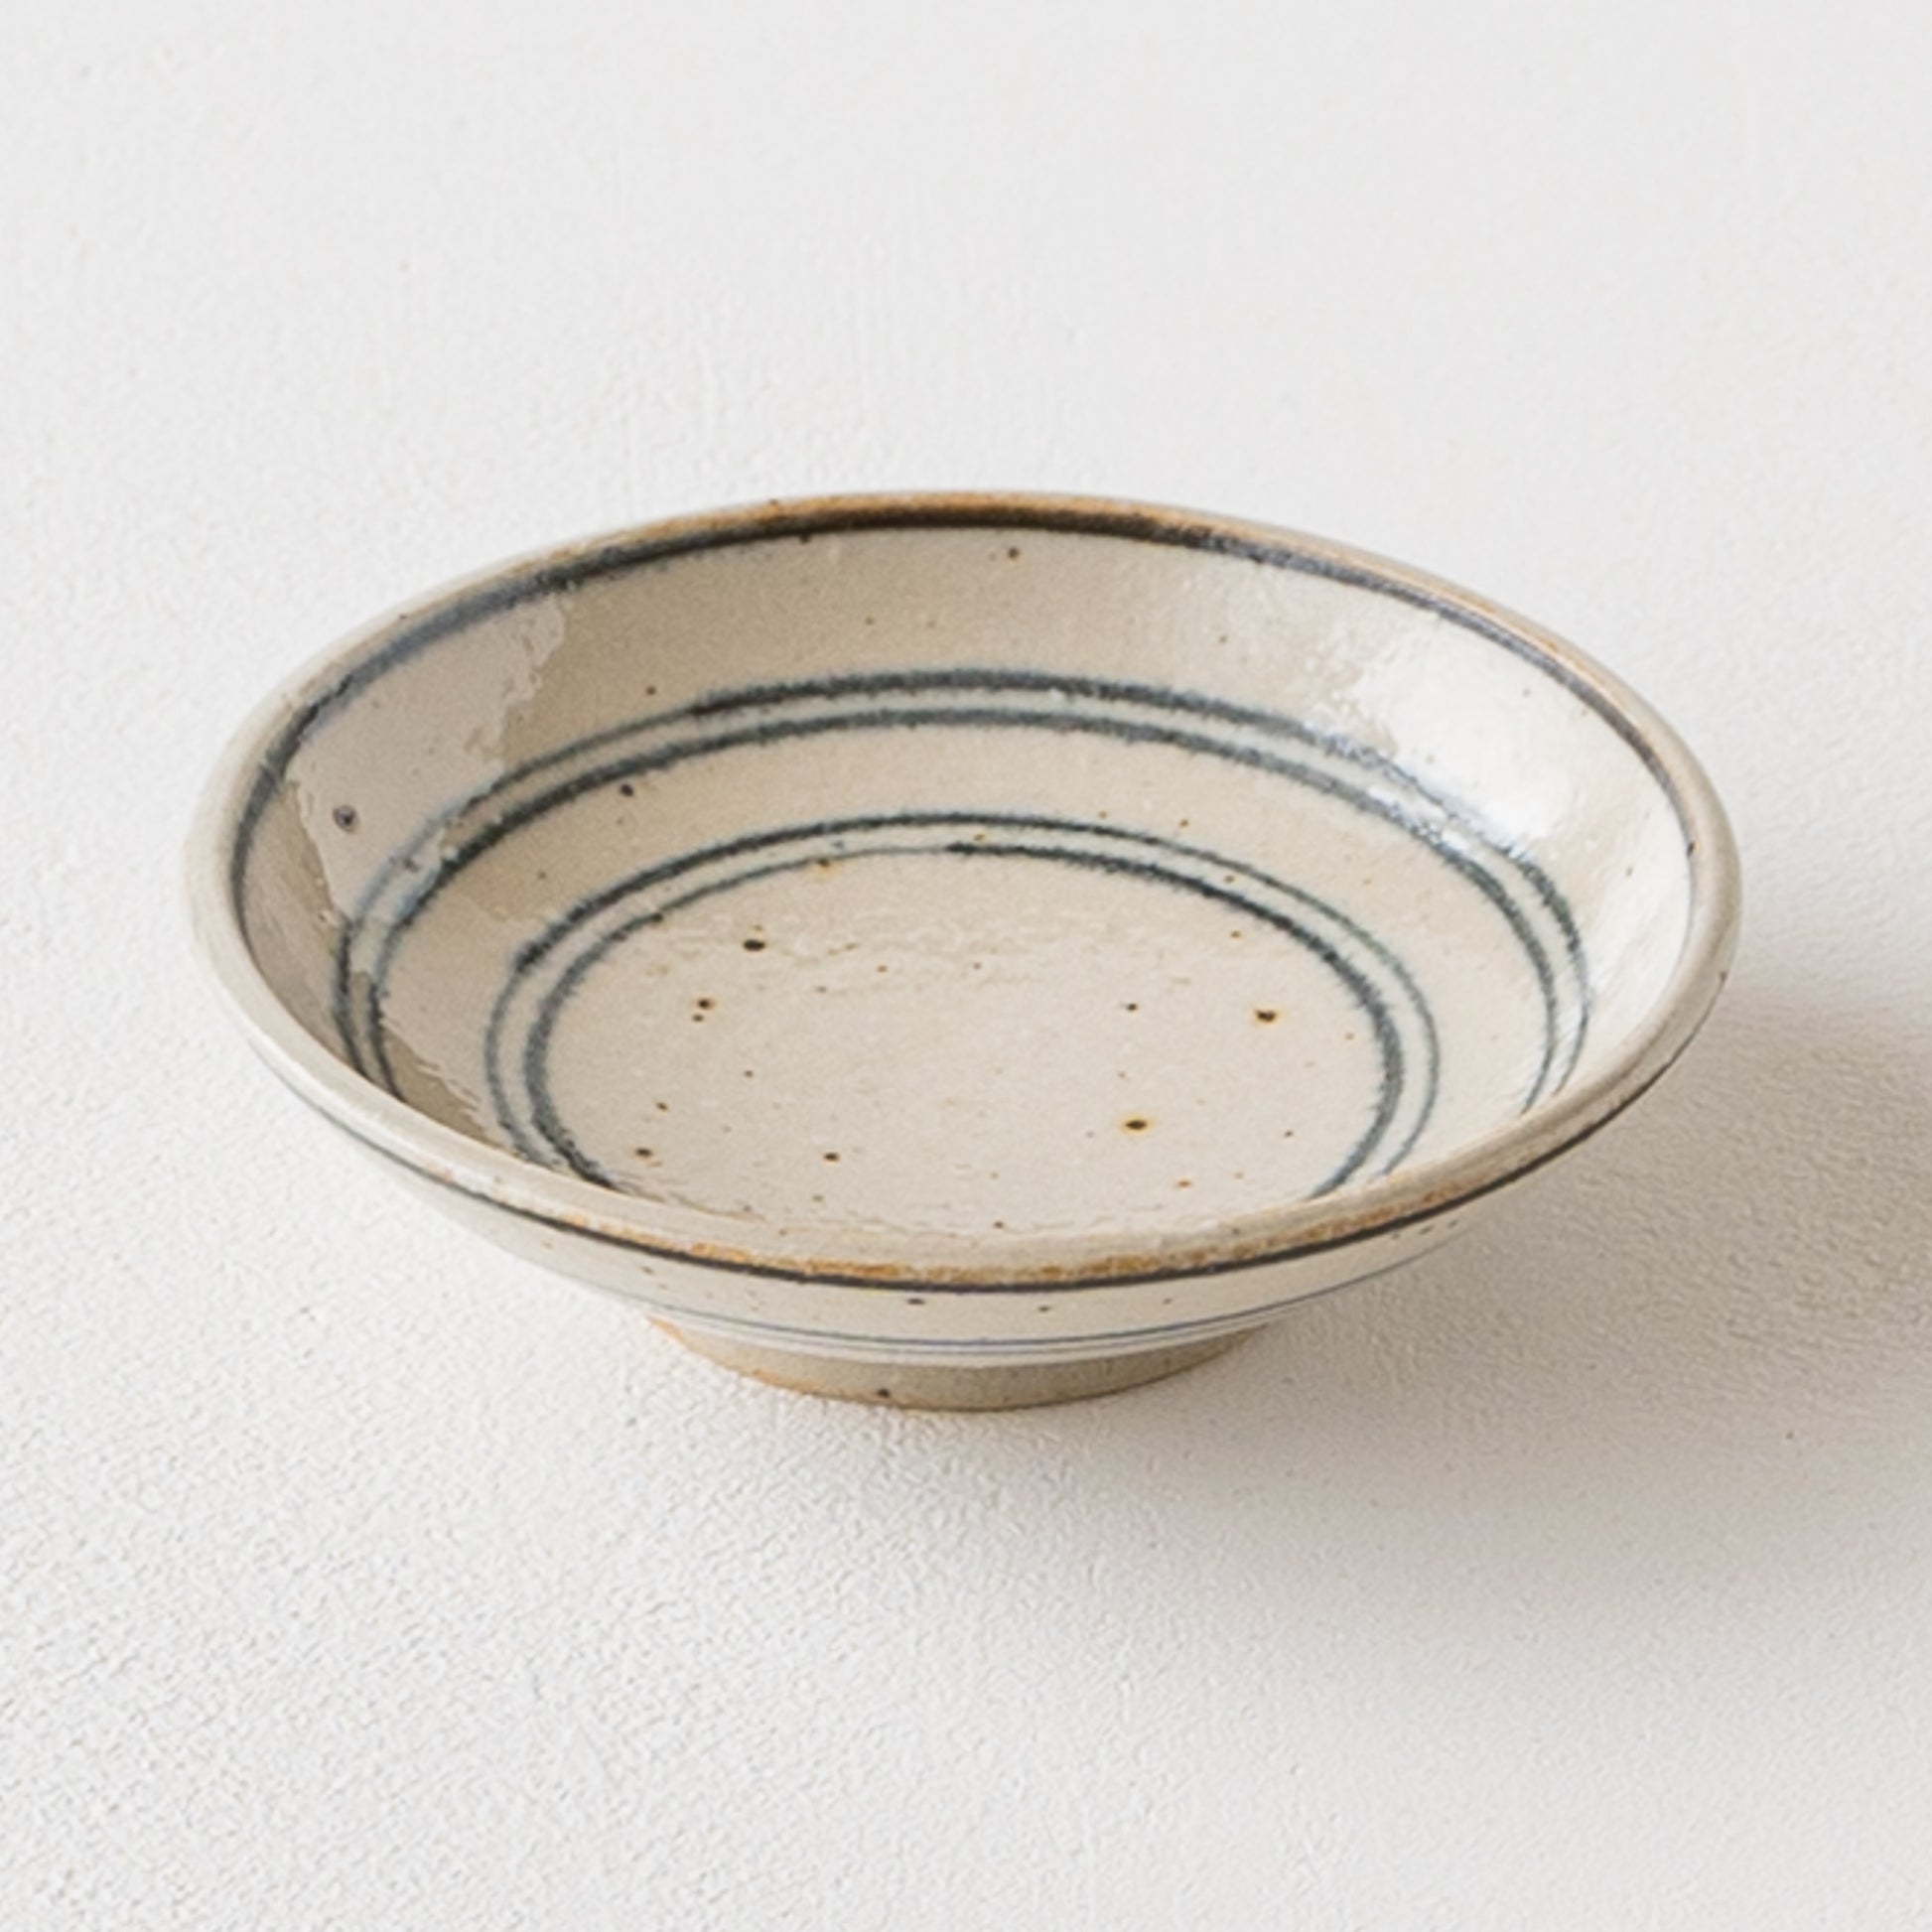 ちょこっとおかずの盛り付けにぴったりな冨本大輔さんの灰釉染付3寸皿